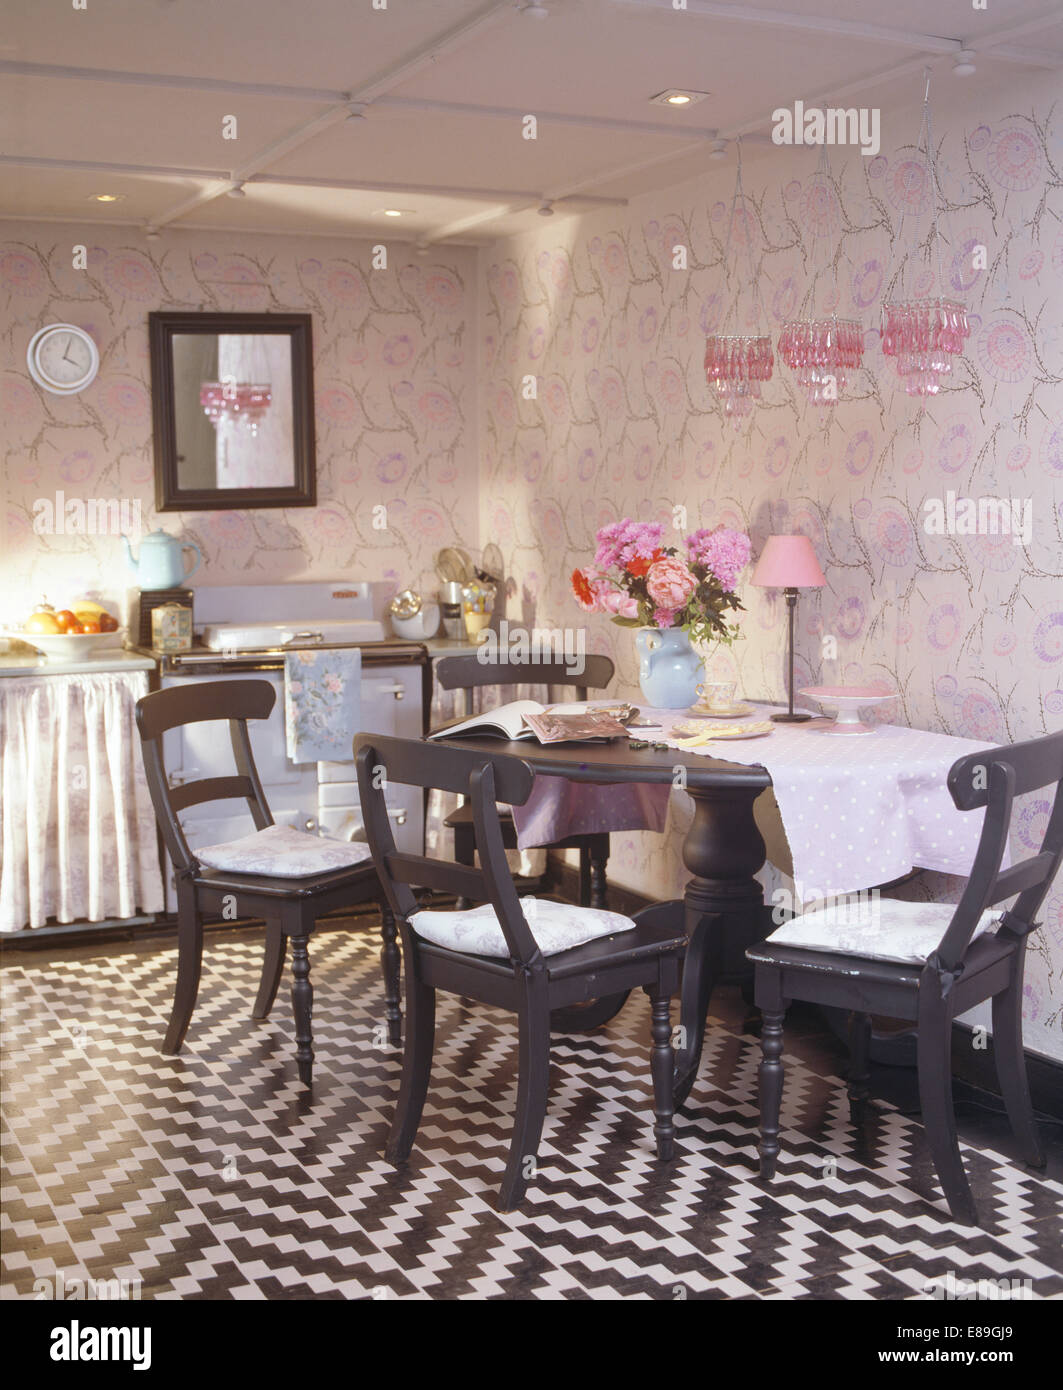 Schwarz + weiß Zick Zack perforierten Boden in Küche Esszimmer mit gemalten schwarzen Stühlen und Tisch mit perforierten Wänden Stockfoto